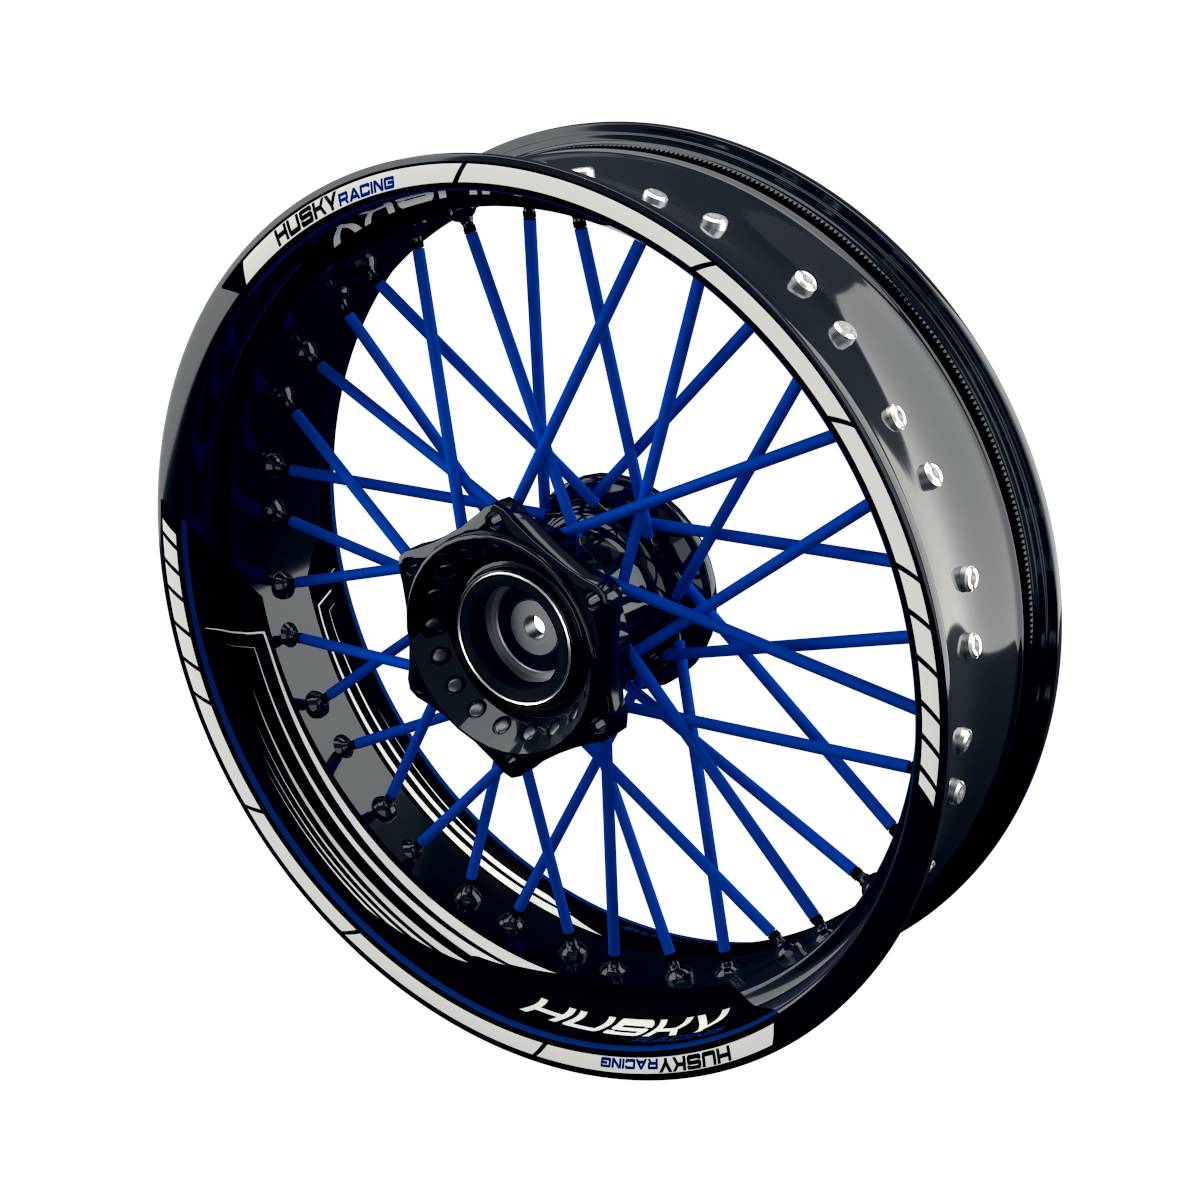 HUSKY Racing SAW Rim Decals Wheelsticker Premium splitted